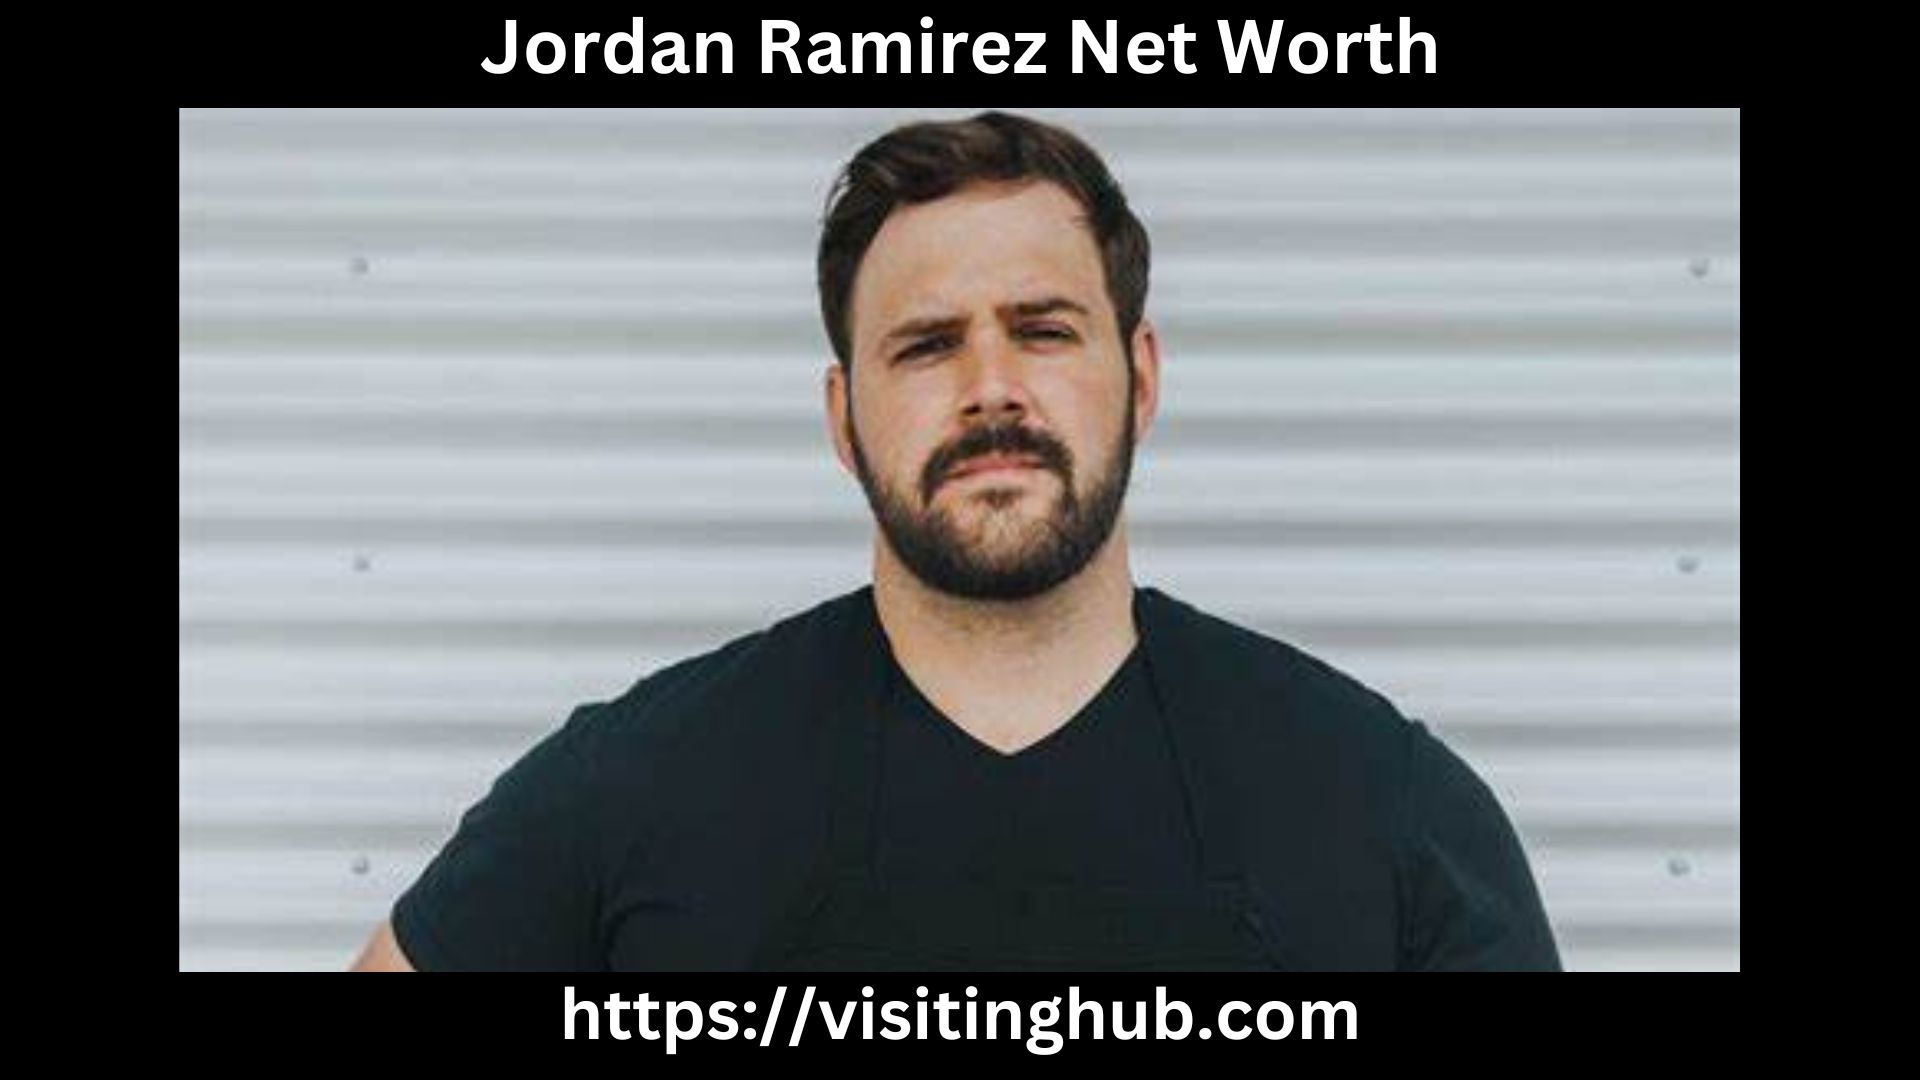 Jordan Ramirez Net Worth